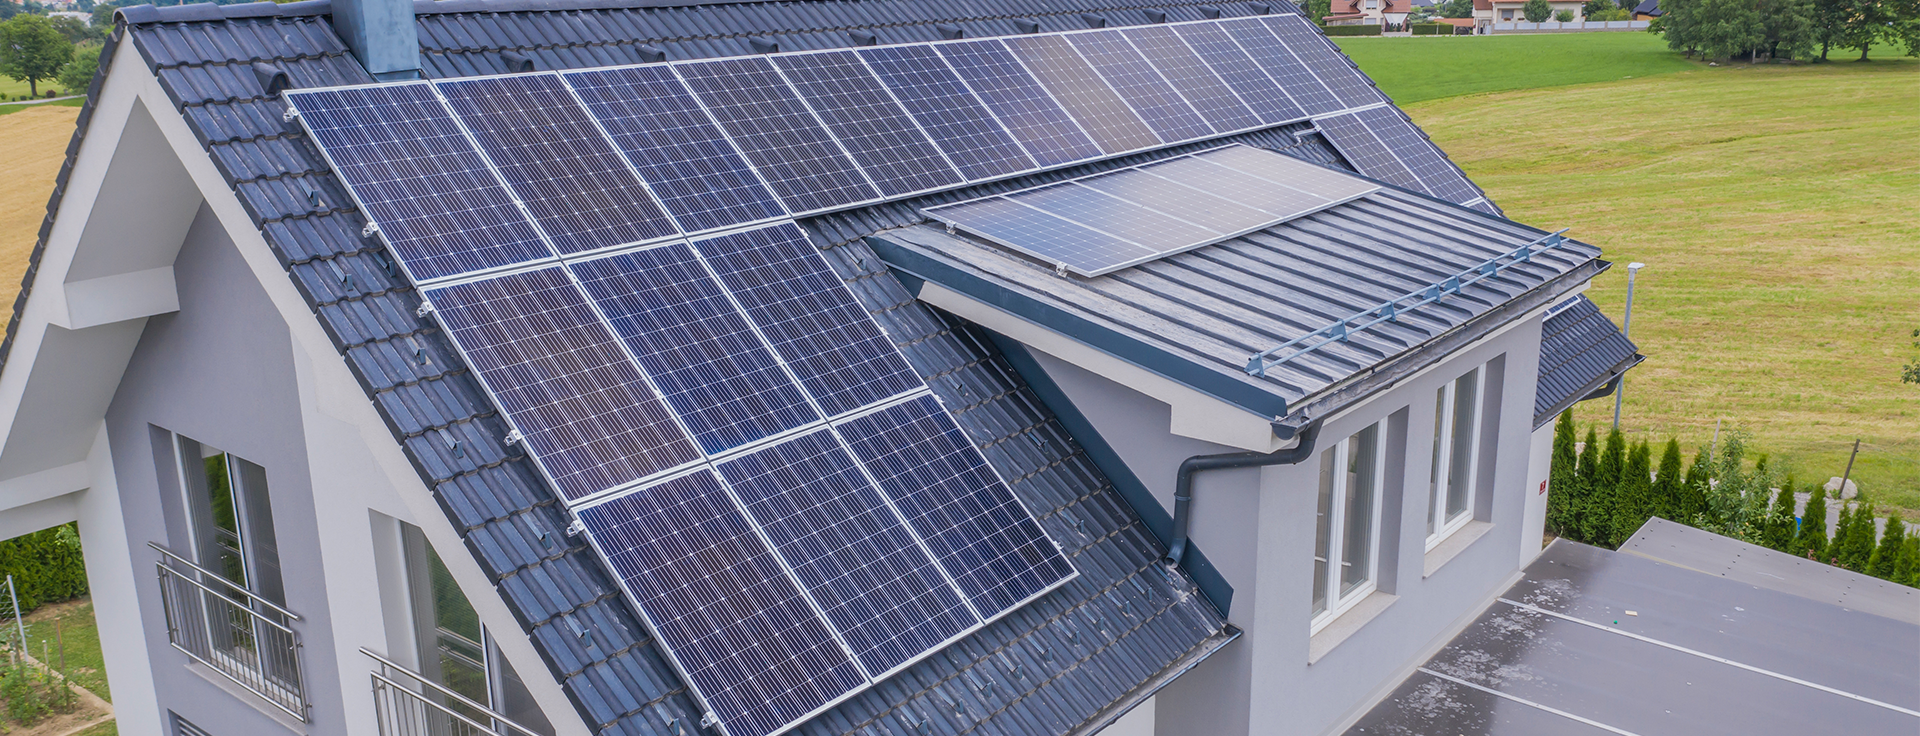 Paneles Solares: La Energía Renovable del Futuro - Electronova -  Comercializadora de energía eléctrica